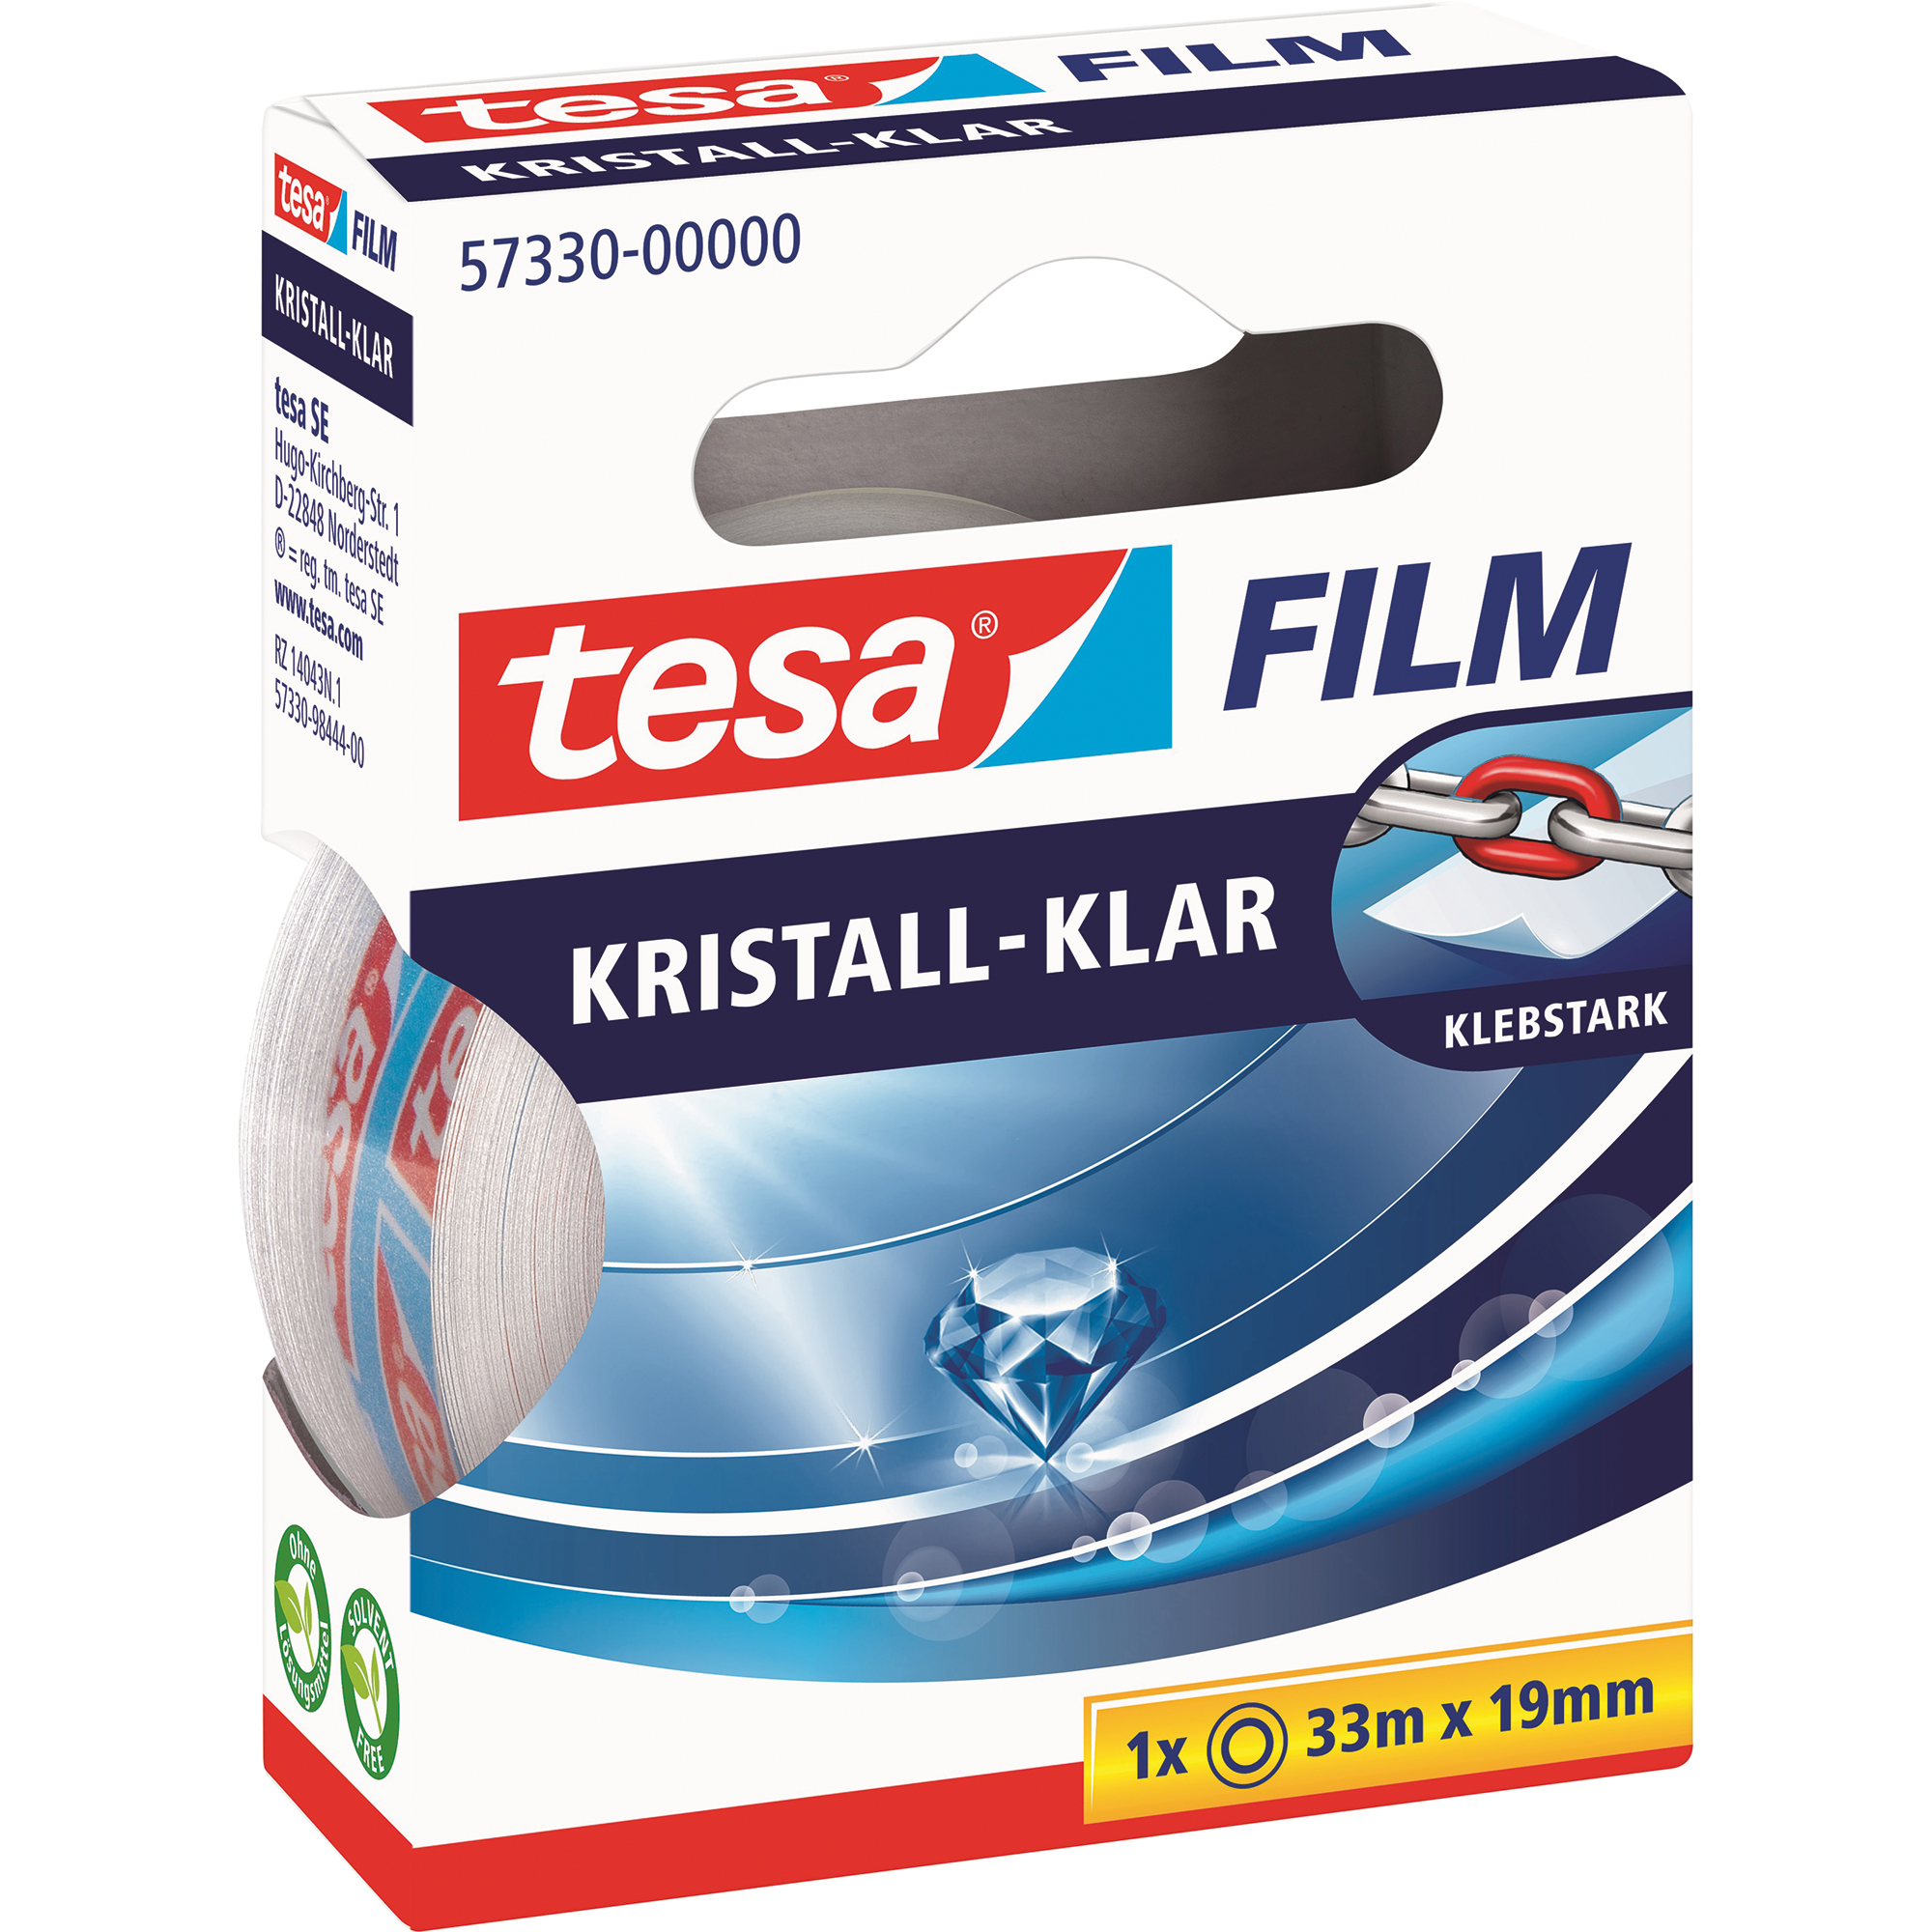 tesa® Klebefilm tesafilm® kristall-klar 19 mm x 33 m (B x L)